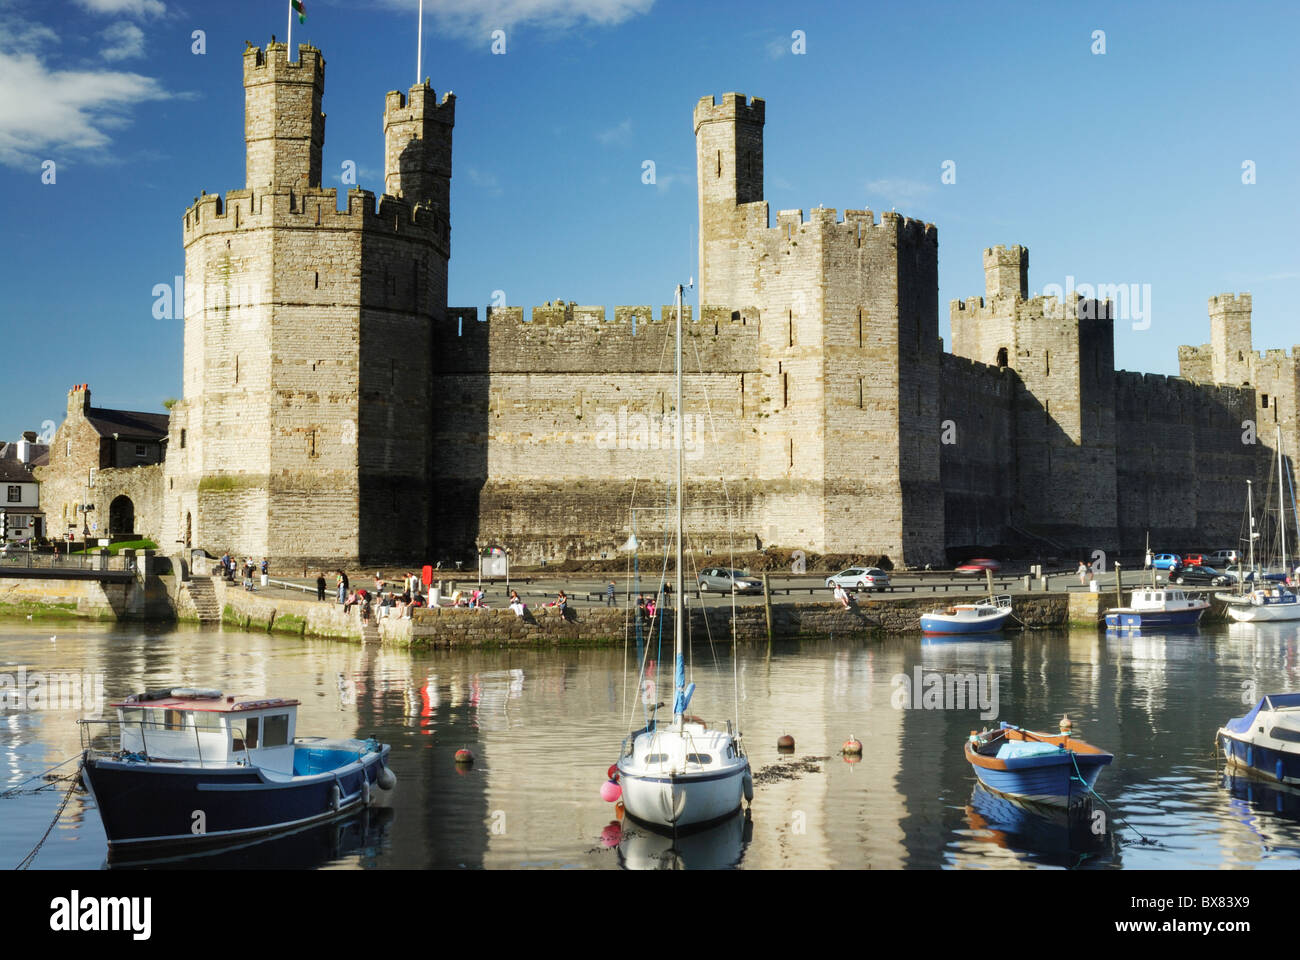 Caernarfon Castle, Caernarfon, Gwynedd, North Wales, UK Stock Photo